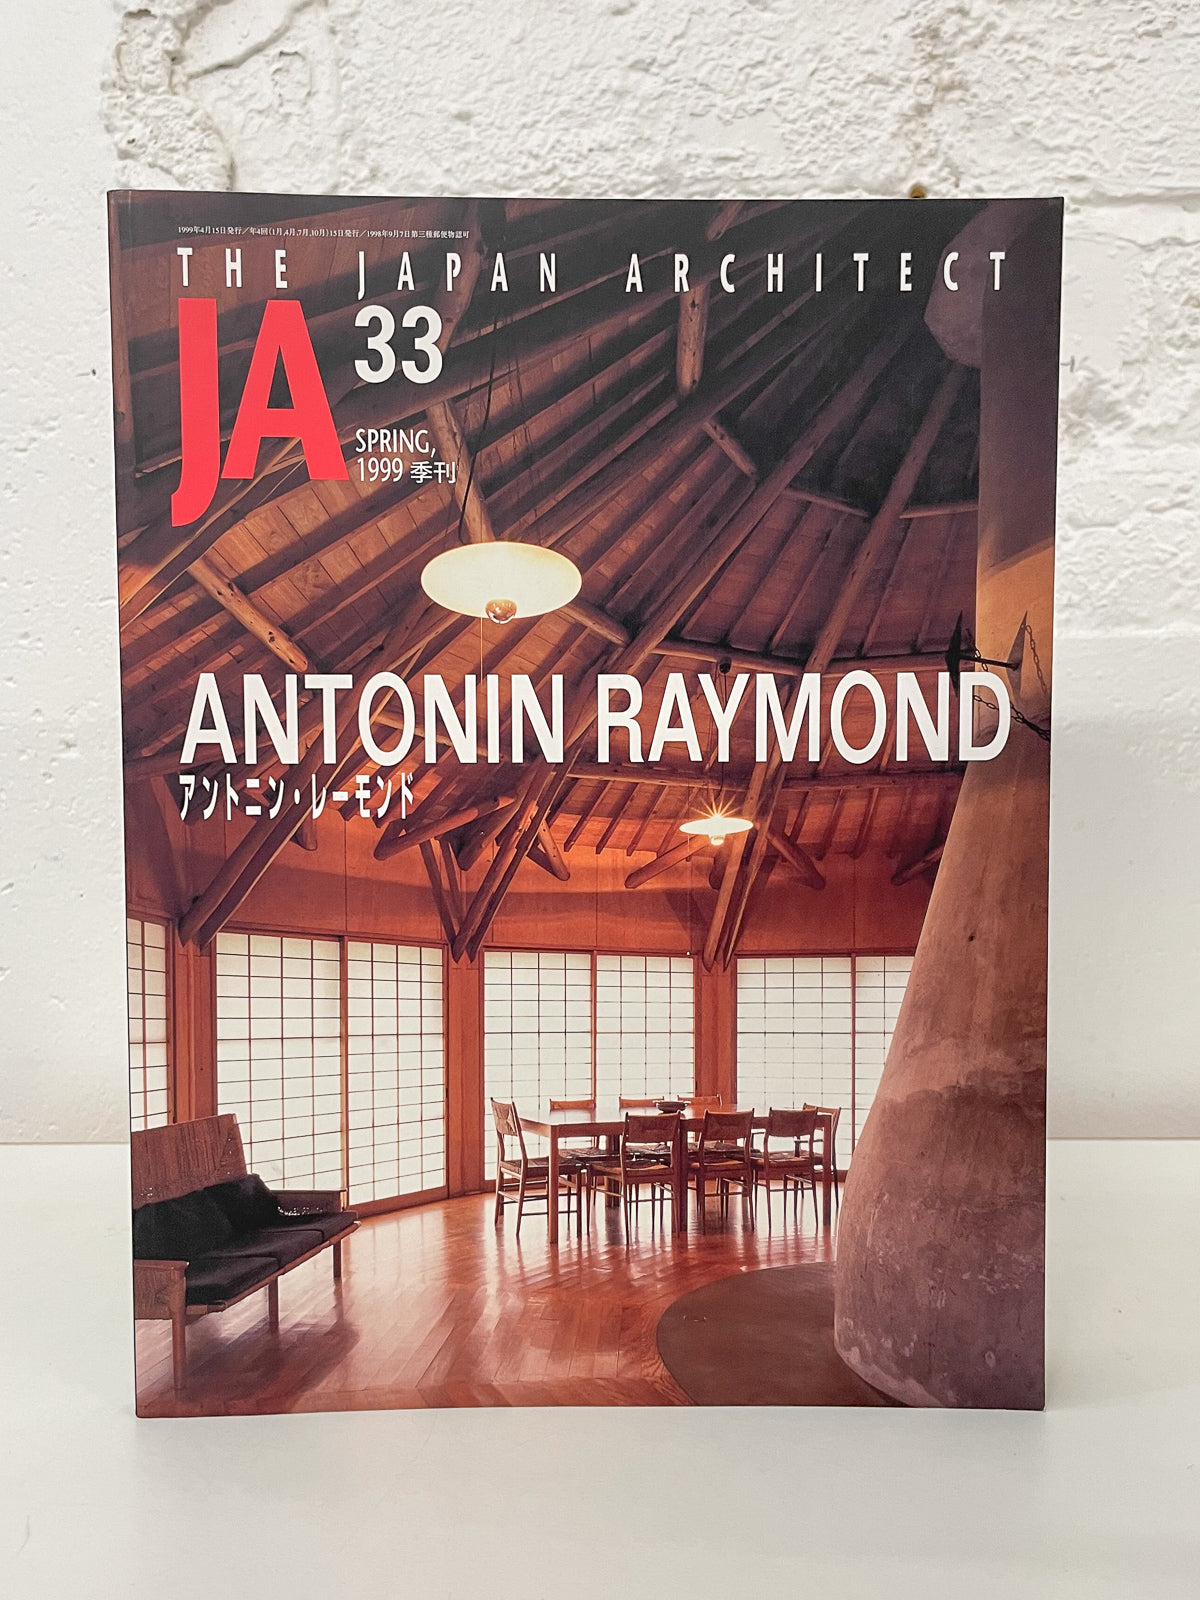 Antonin Raymond, JA 33 Spring 1999